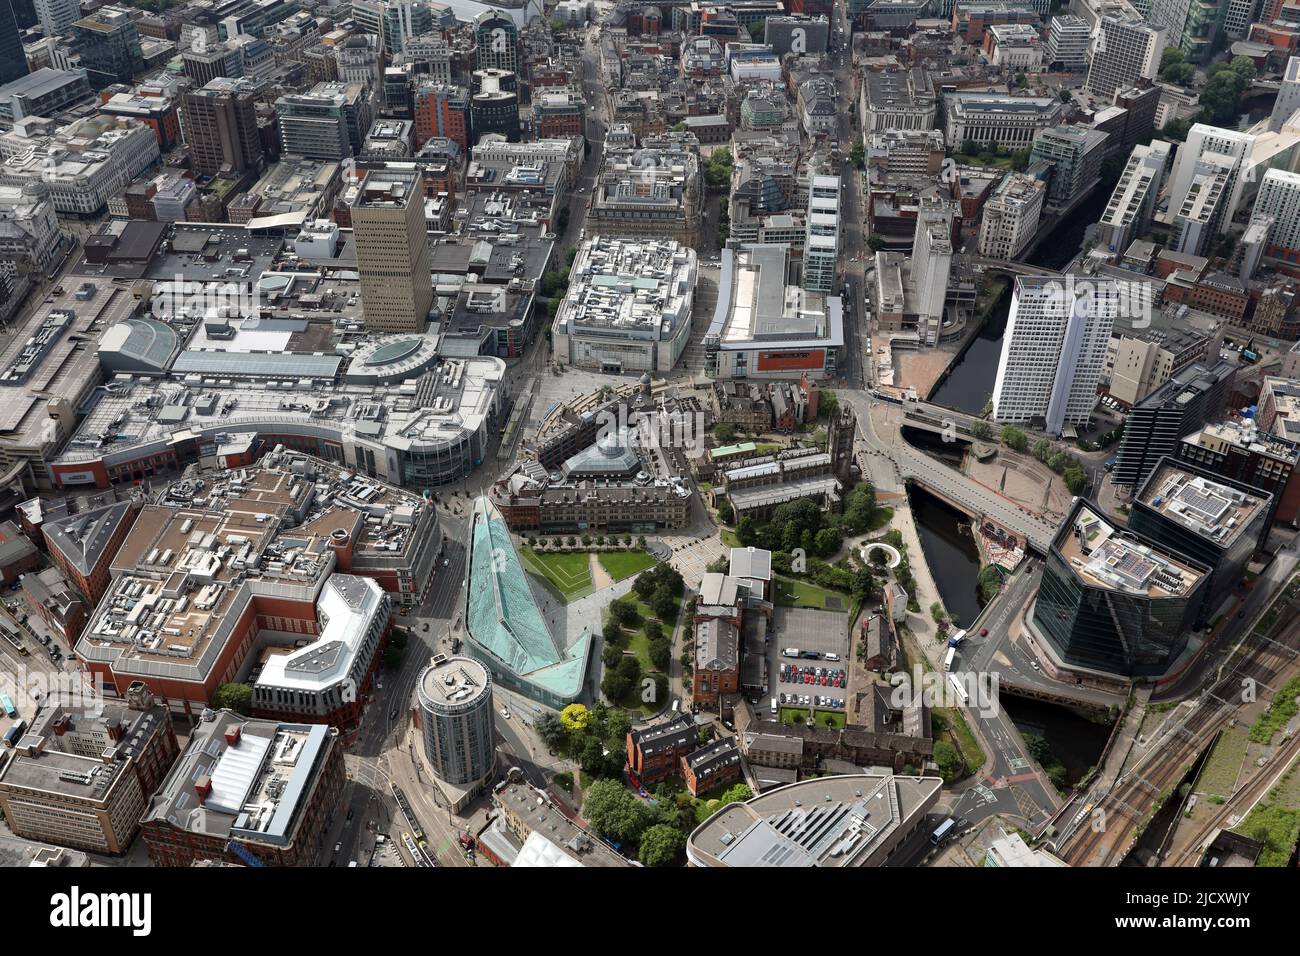 Vue aérienne du centre-ville de Manchester : jardins de la cathédrale, musée national du football (bldg vert), cathédrale de Manchester et parc commémoratif de la Glade of Light Banque D'Images